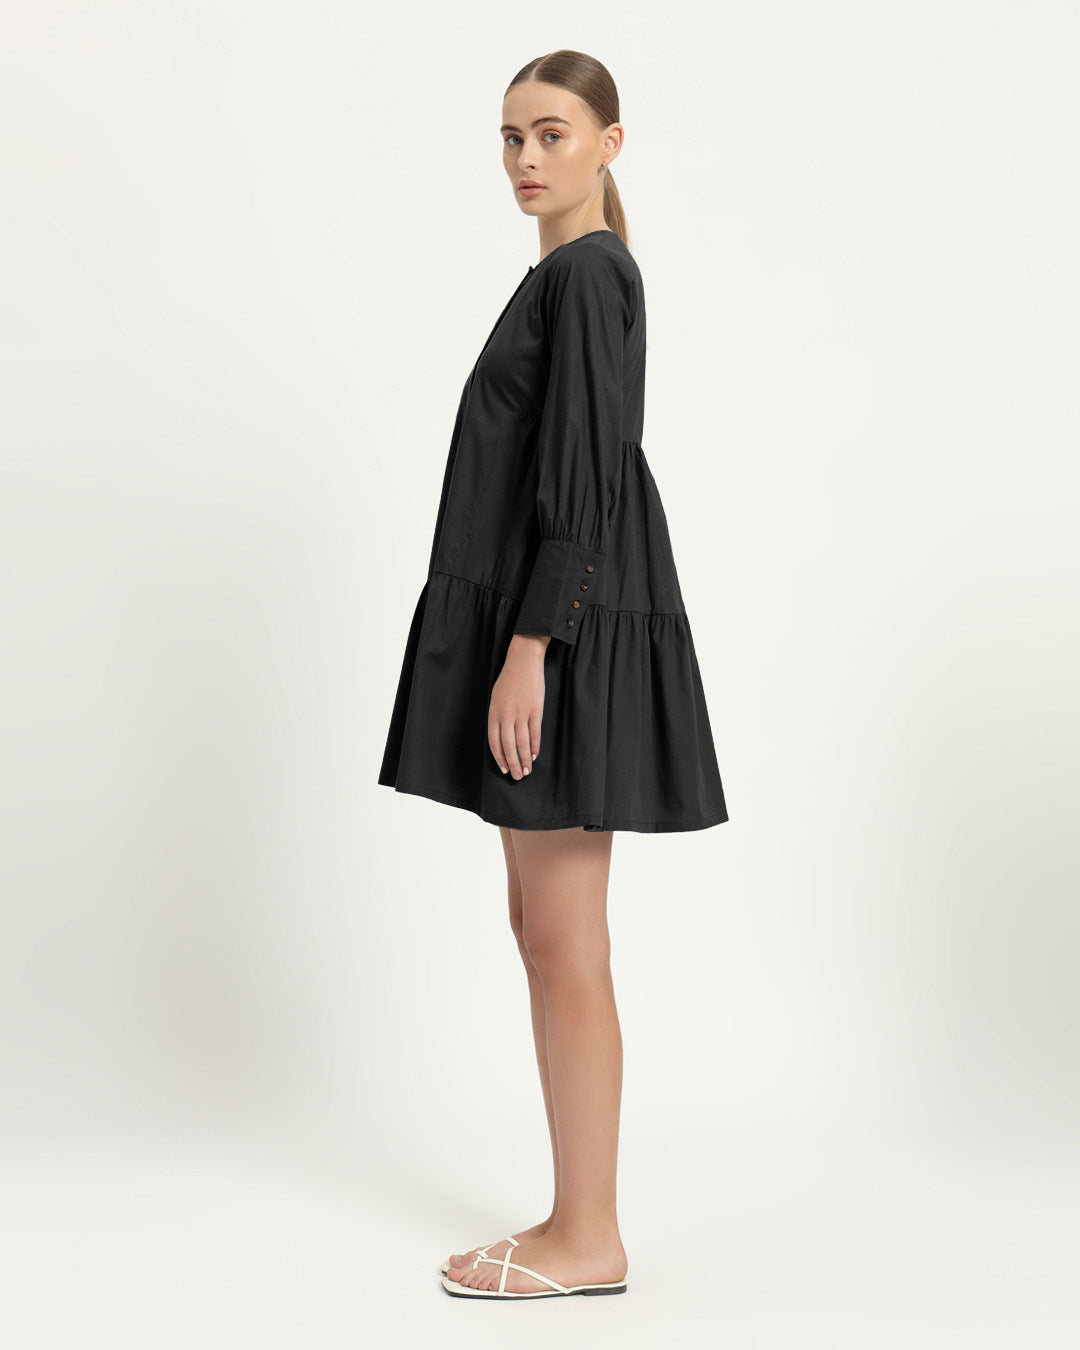 The Brandis Noir Cotton Dress